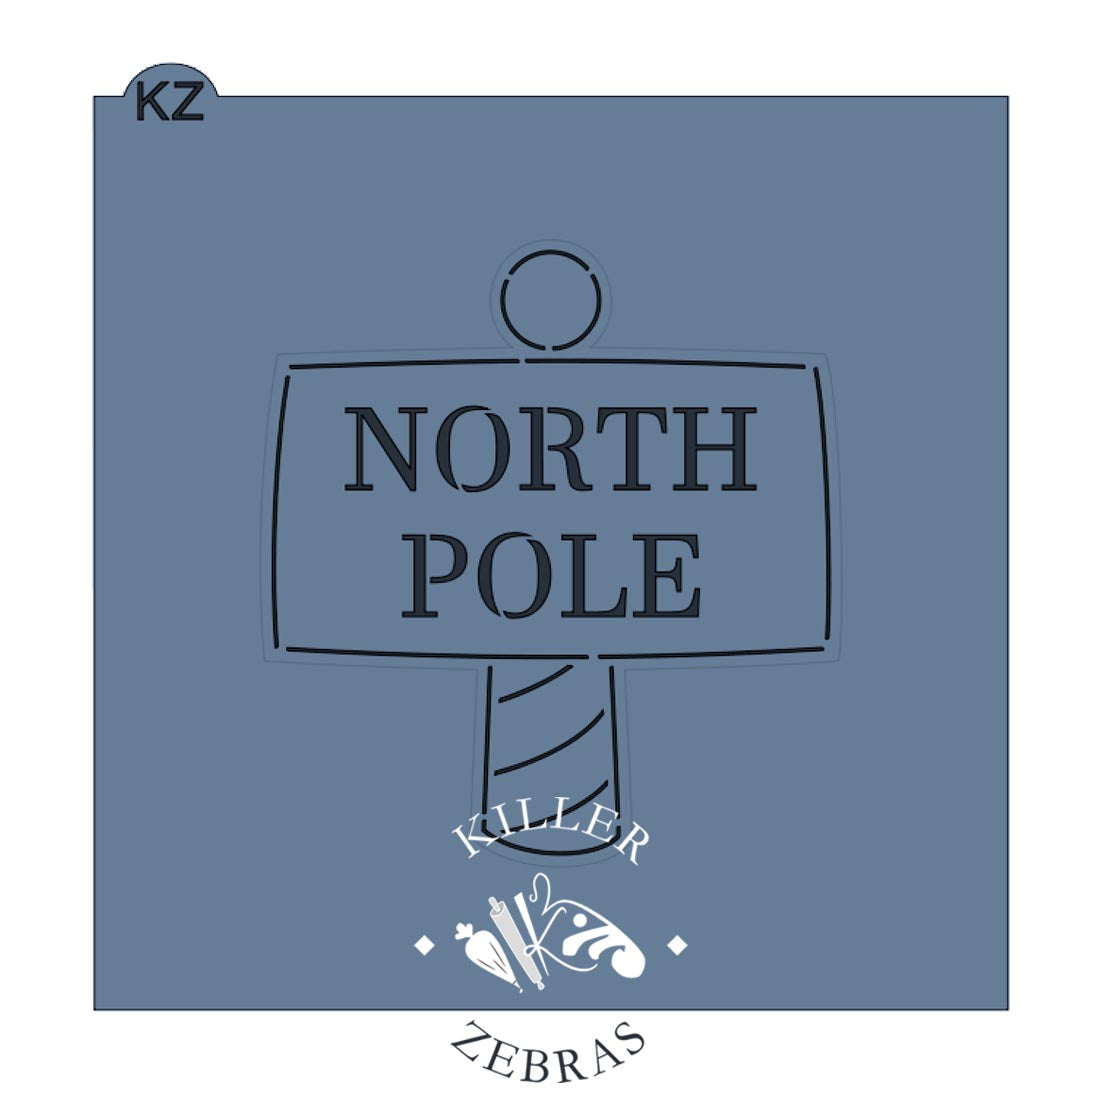 North Pole Cutter/Stencil